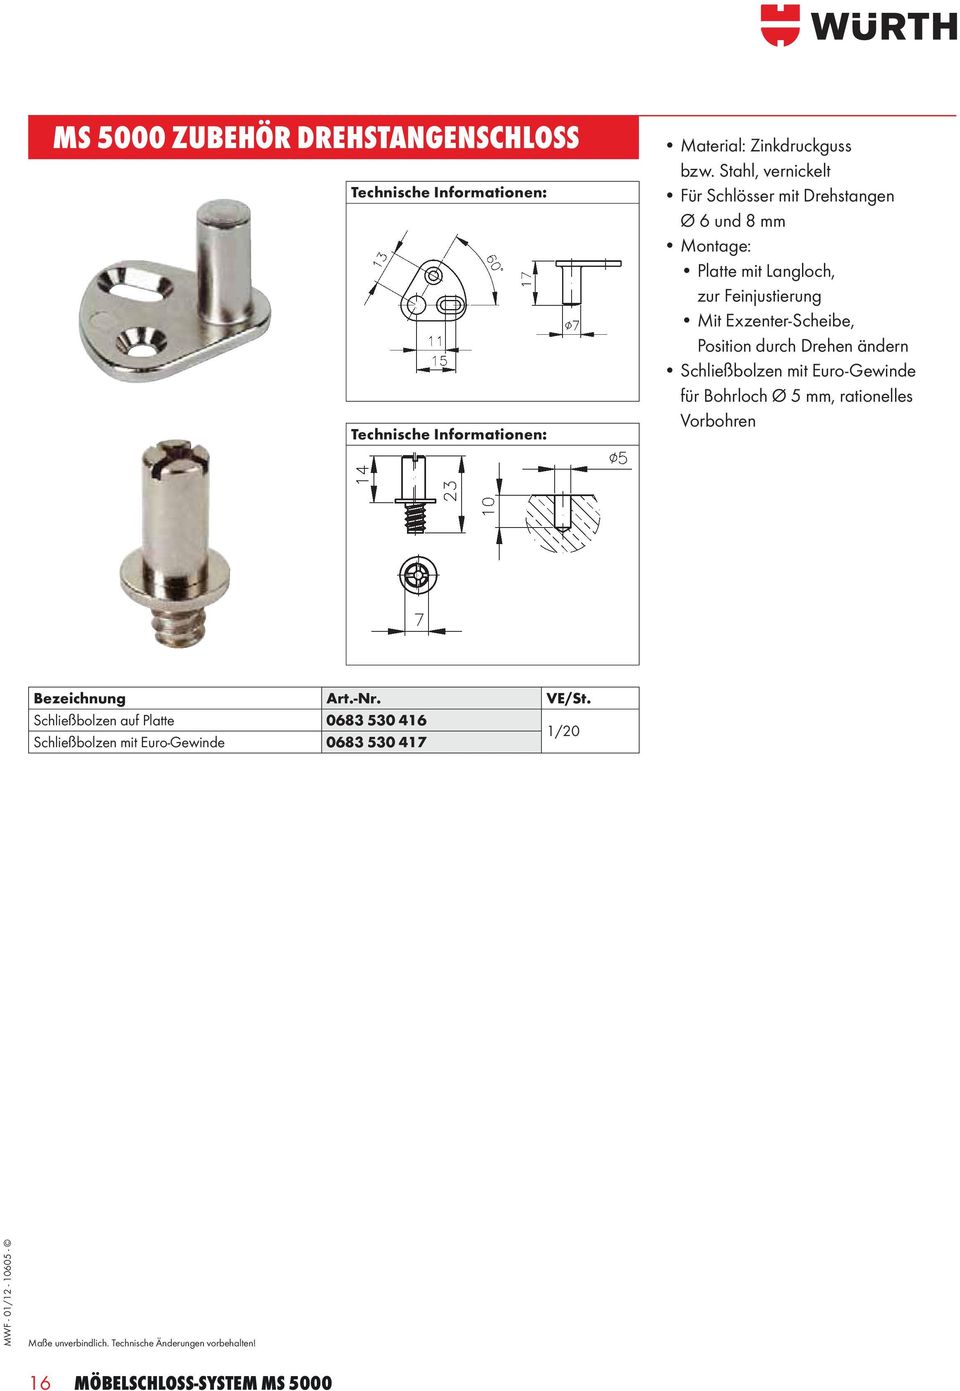 Exzenter-Scheibe, Position durch Drehen ändern Schließbolzen mit Euro-Gewinde für Bohrloch Ø 5 mm, rationelles